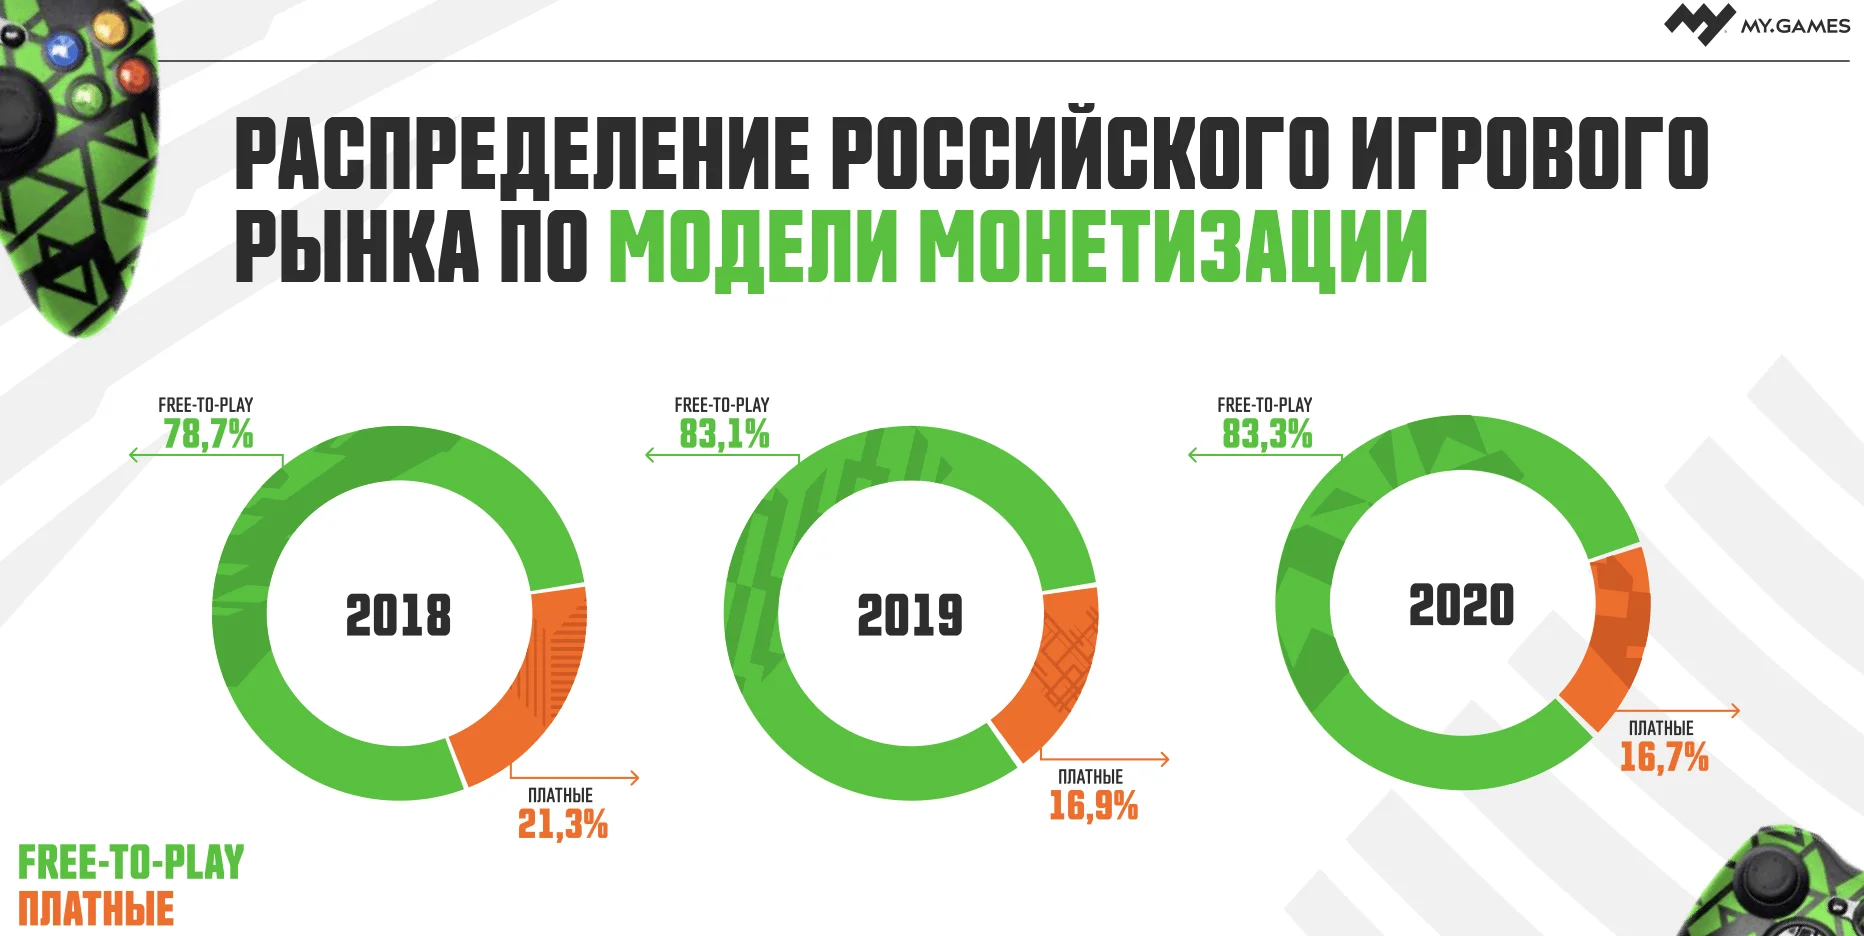 Исследование: объем рынка видеоигр в РФ вырос на 35% в 2020 году

 - фото 2